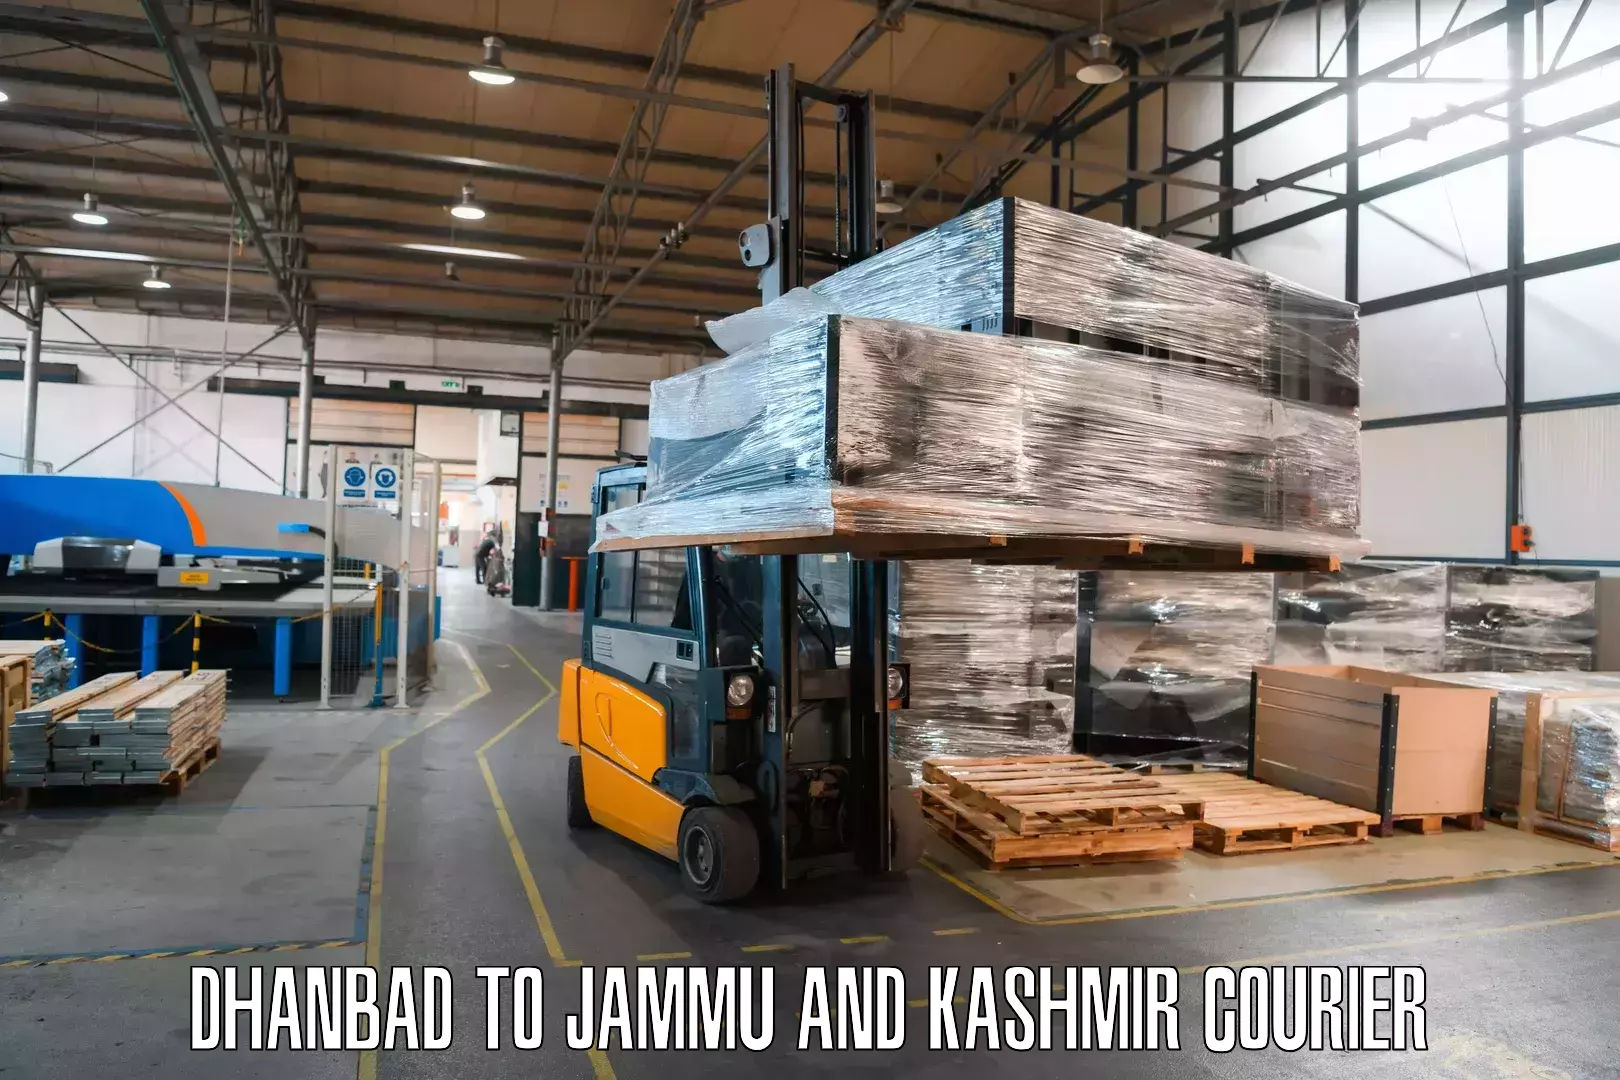 Cargo delivery service Dhanbad to Kishtwar